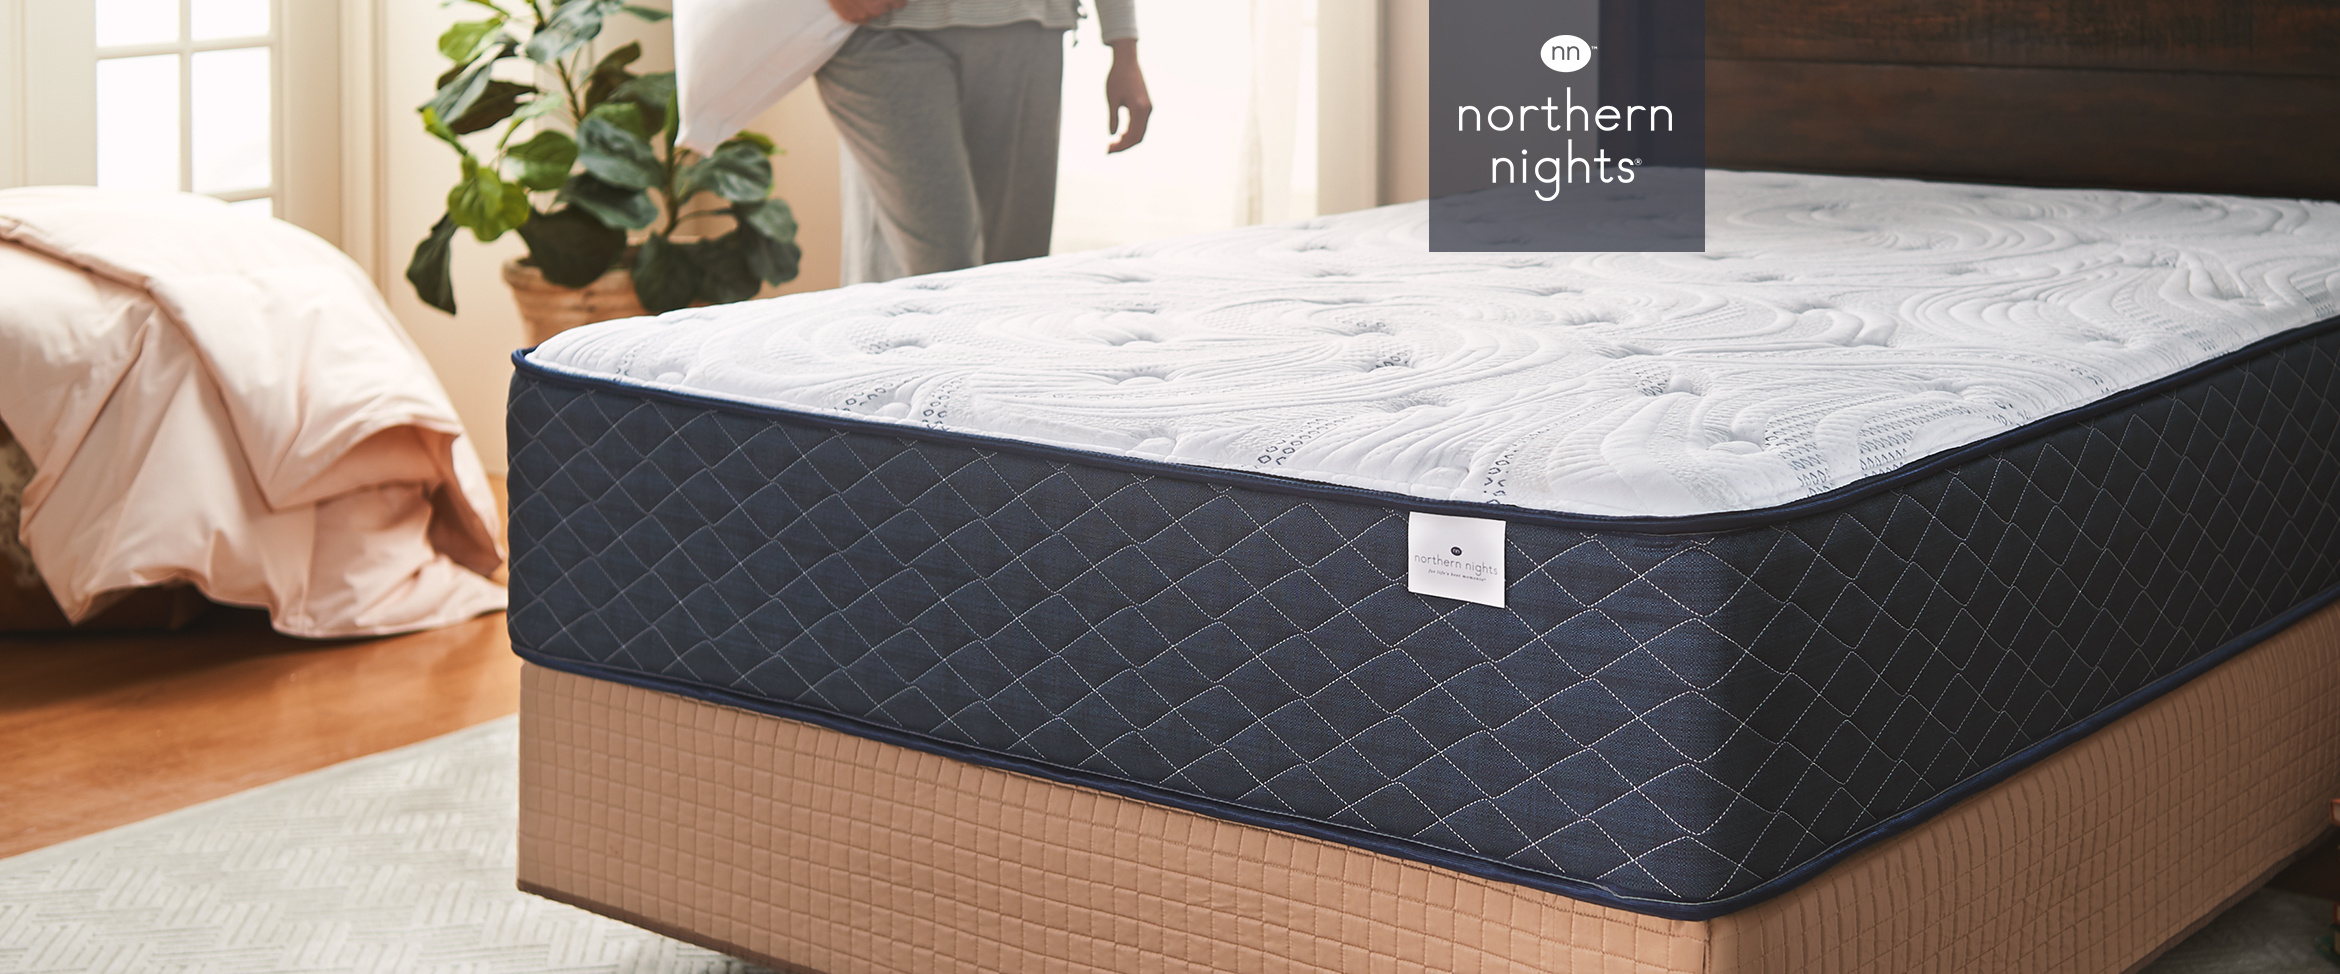 northern nights queen mattress